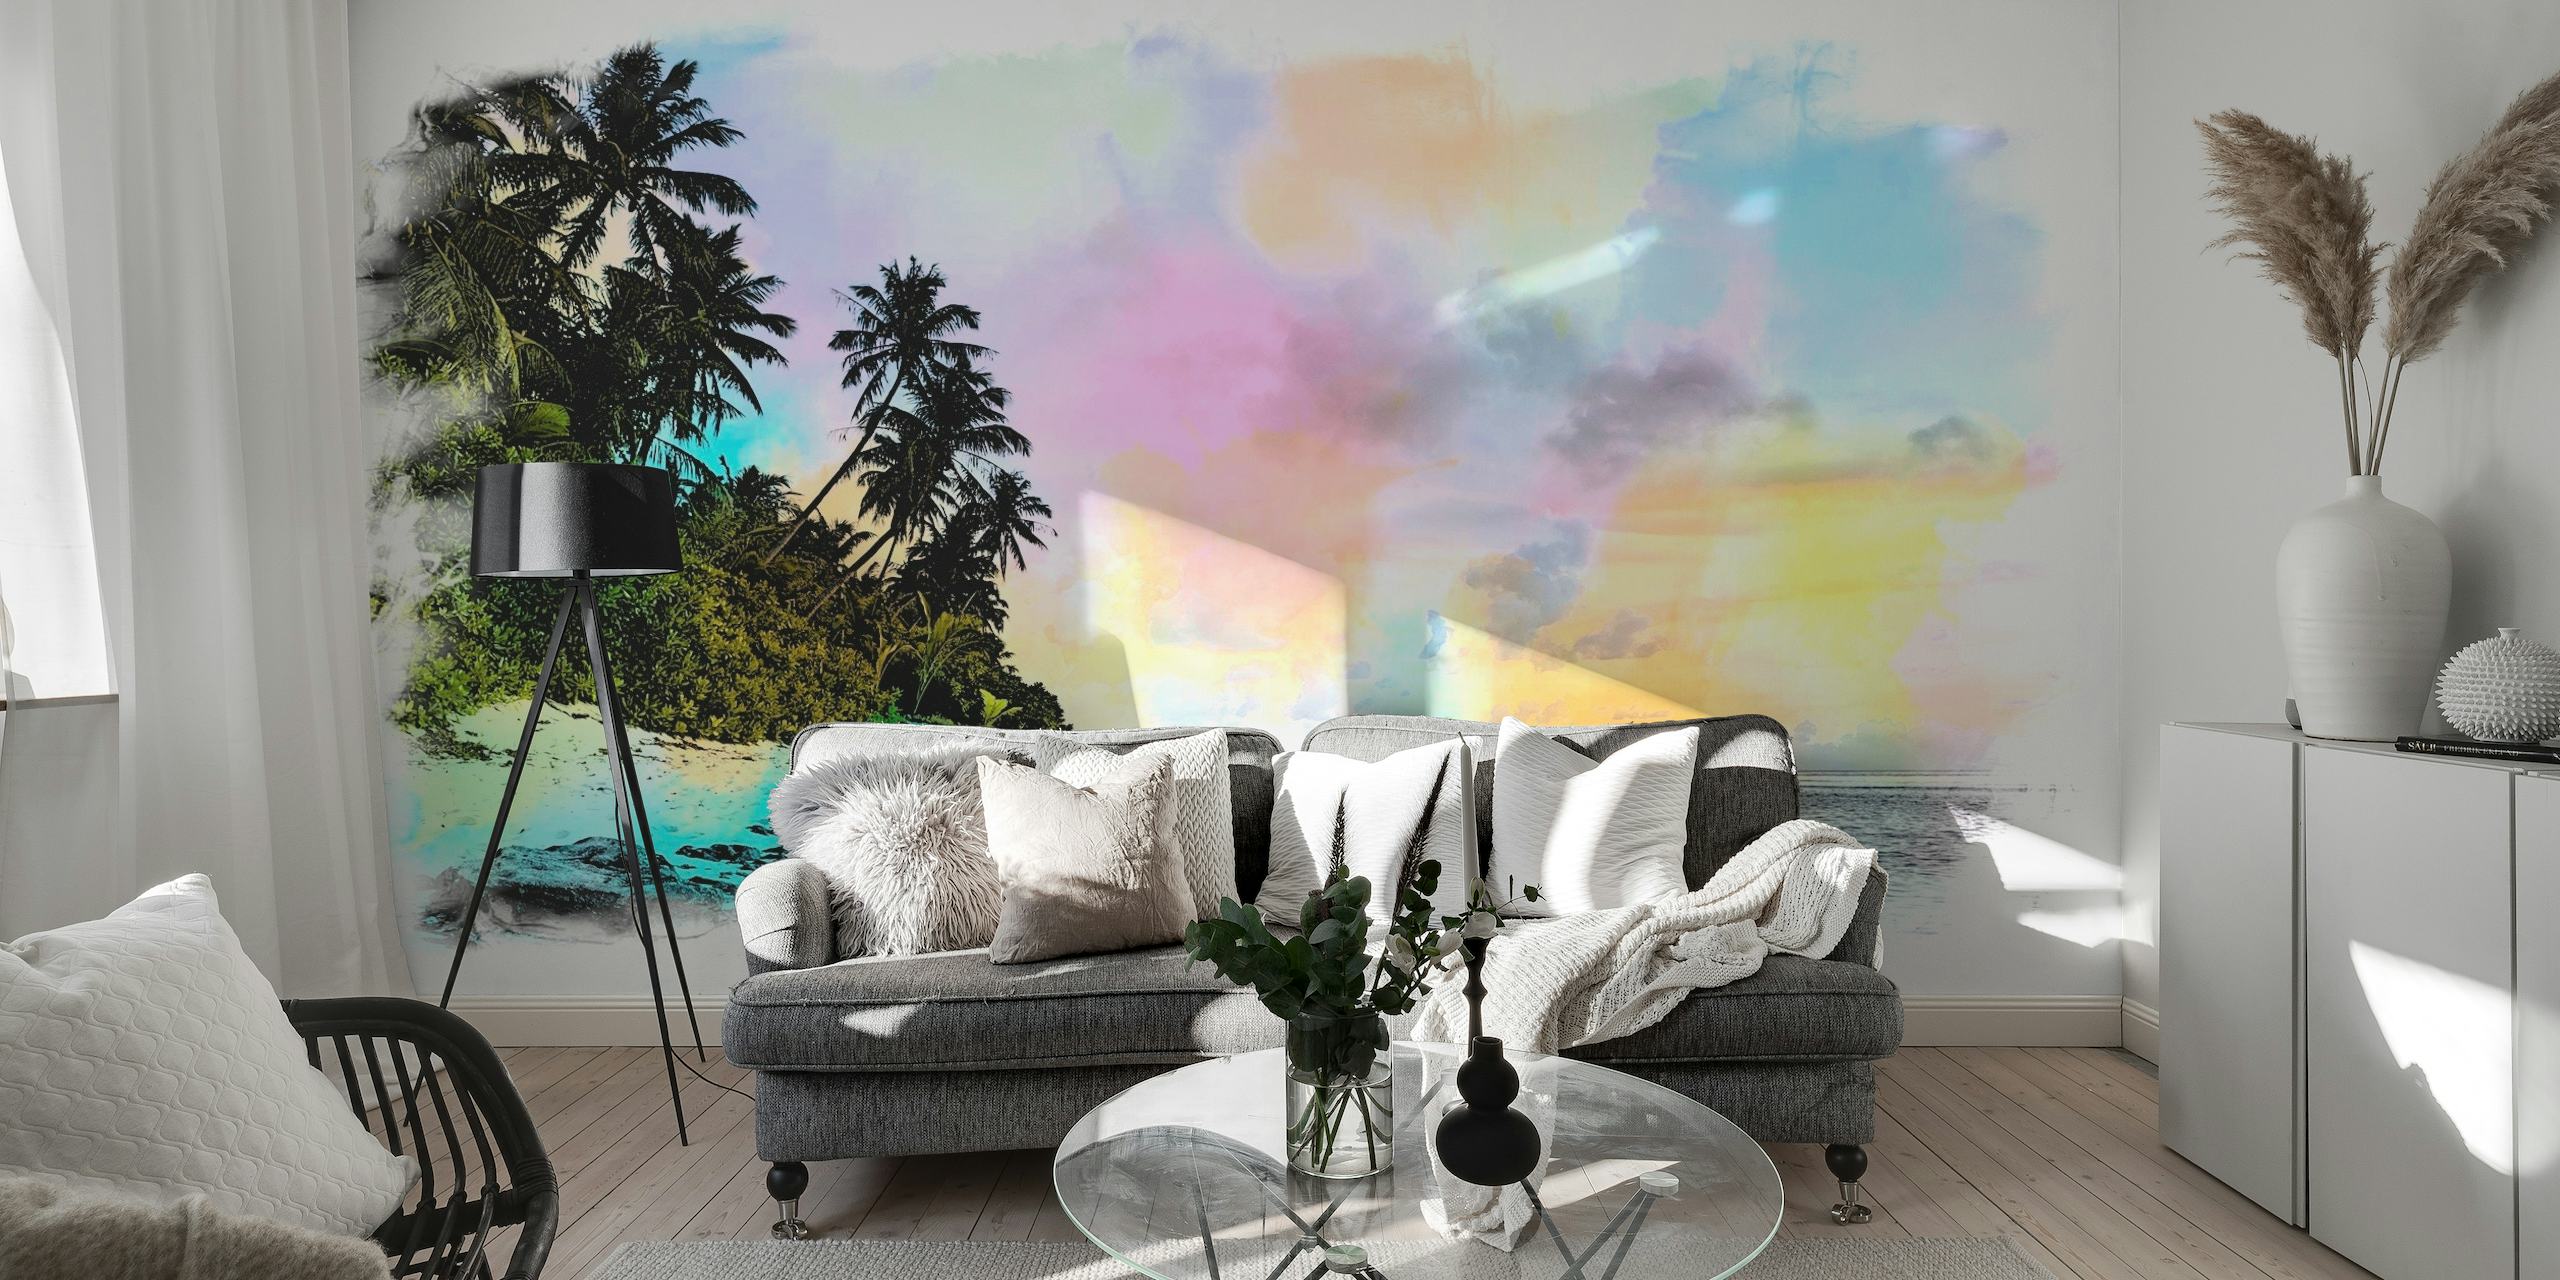 Artistieke aquarelafbeelding van een zomerstrand met palmbomen en pastelkleurige luchten